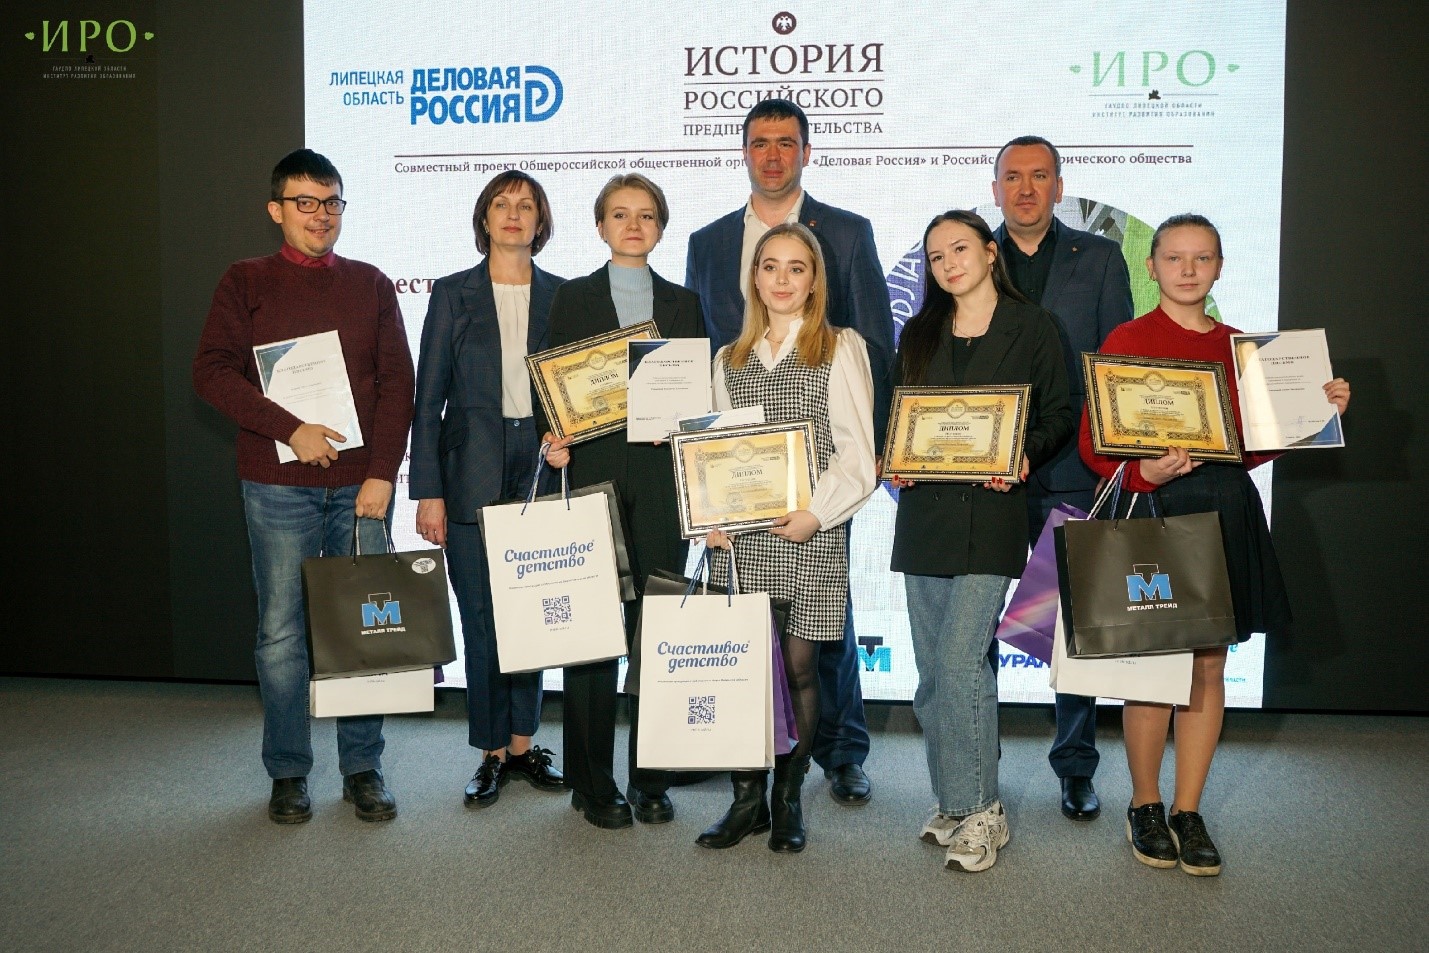 Традиционно студенты Липецкого филиала Финуниверситета приняли участие в региональном этапе X Всероссийской олимпиады по истории российского предпринимательства для студентов и аспирантов